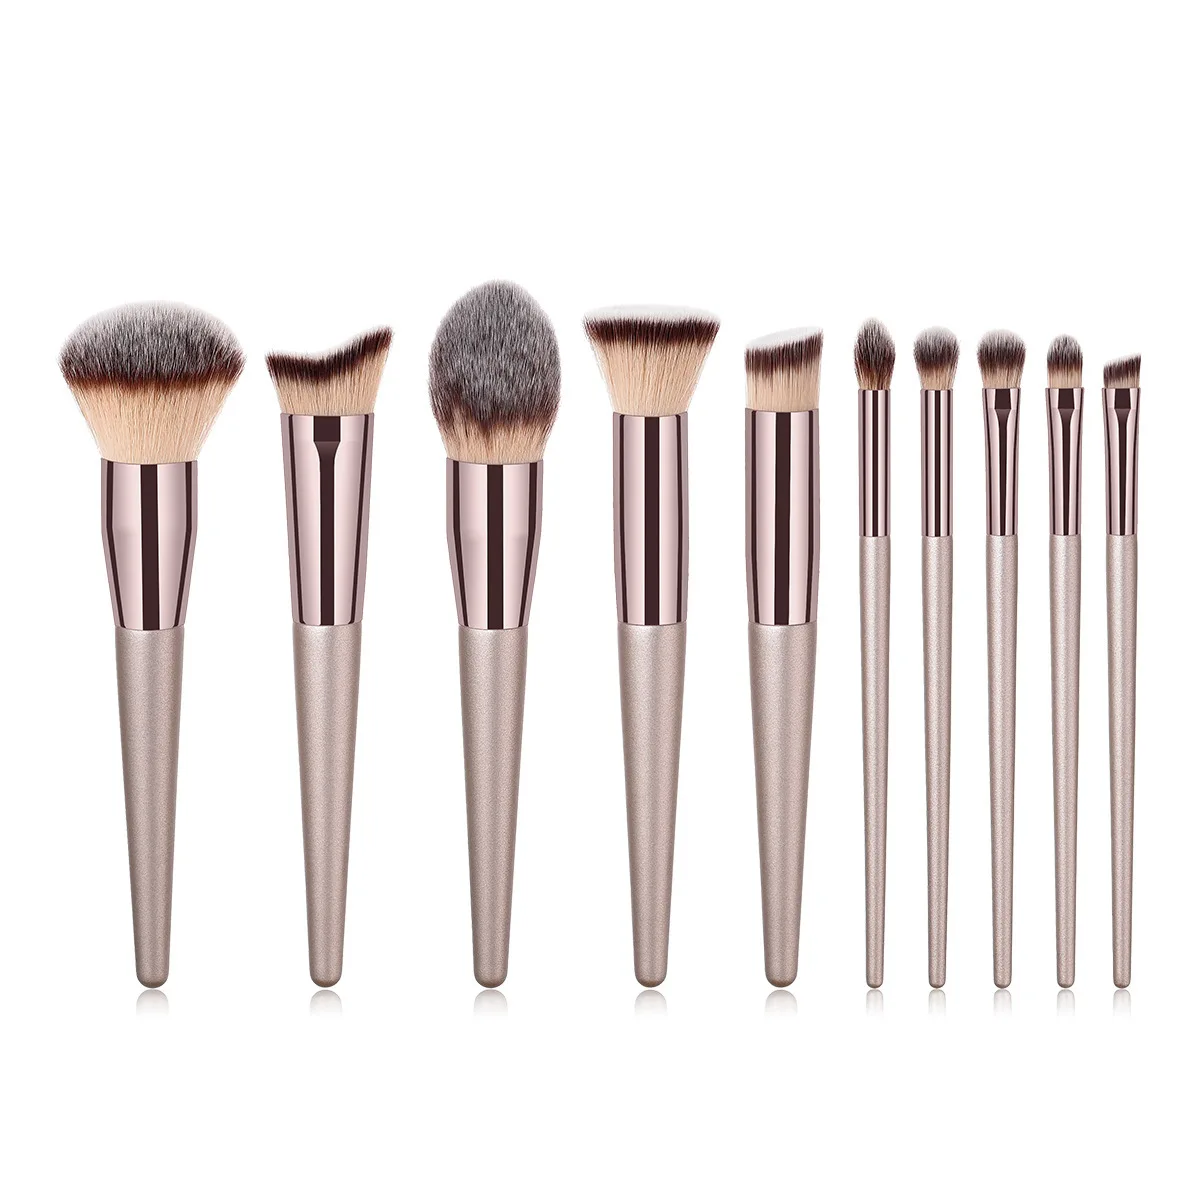 

KOSMETYKI 5-14Pcs Desiger Makeup Brushes Foundation Powder Blush Eyeshadow Blending Cosmetic Set Tools Brochas Maquillaje